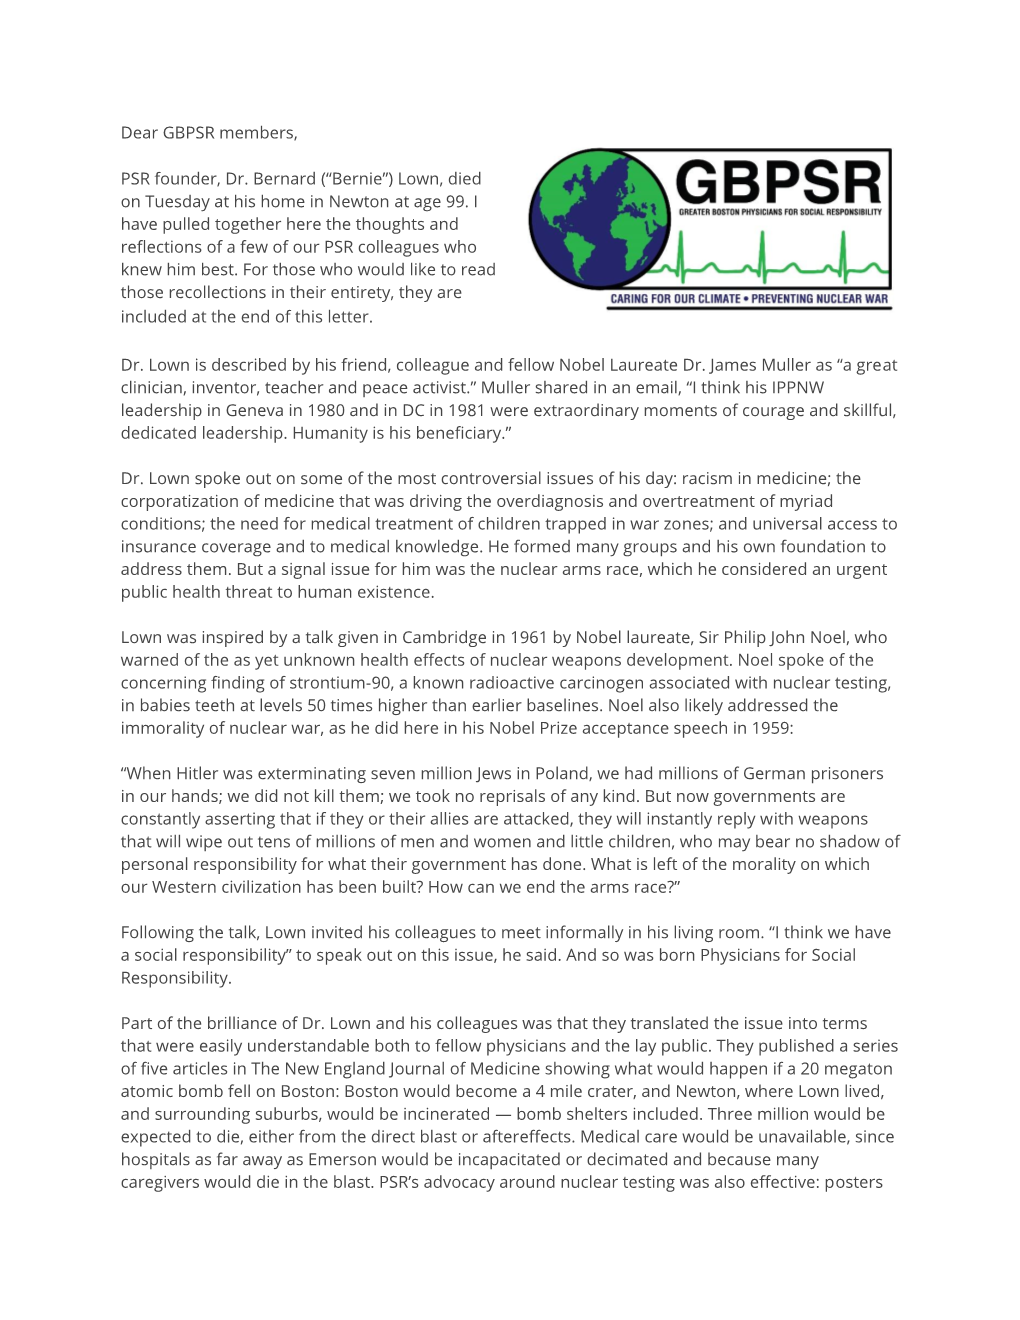 Dear GBPSR Members, PSR Founder, Dr. Bernard (“Bernie”) Lown, Died